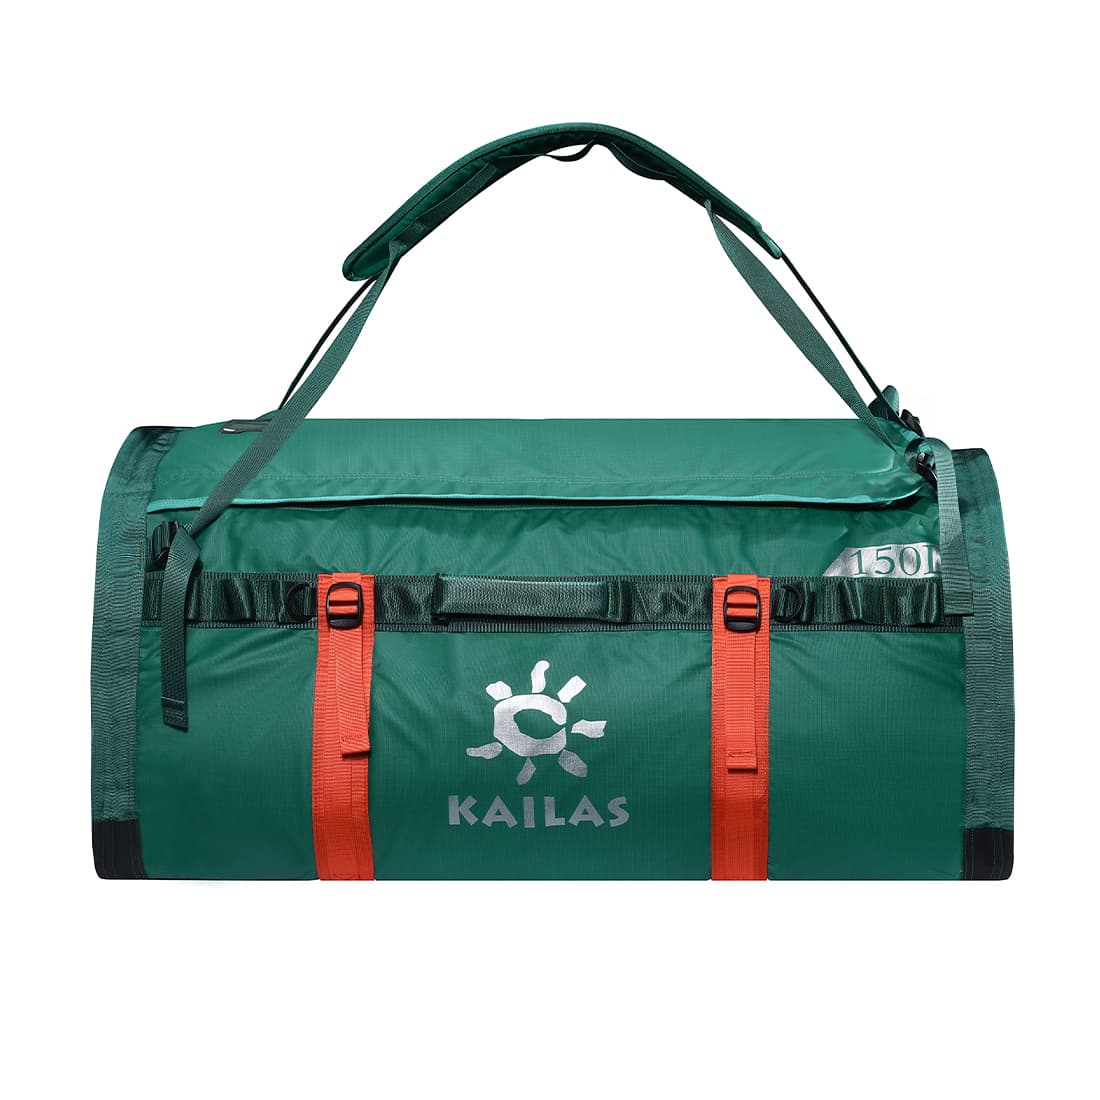 Kailas YAK Duffel Bag 150L